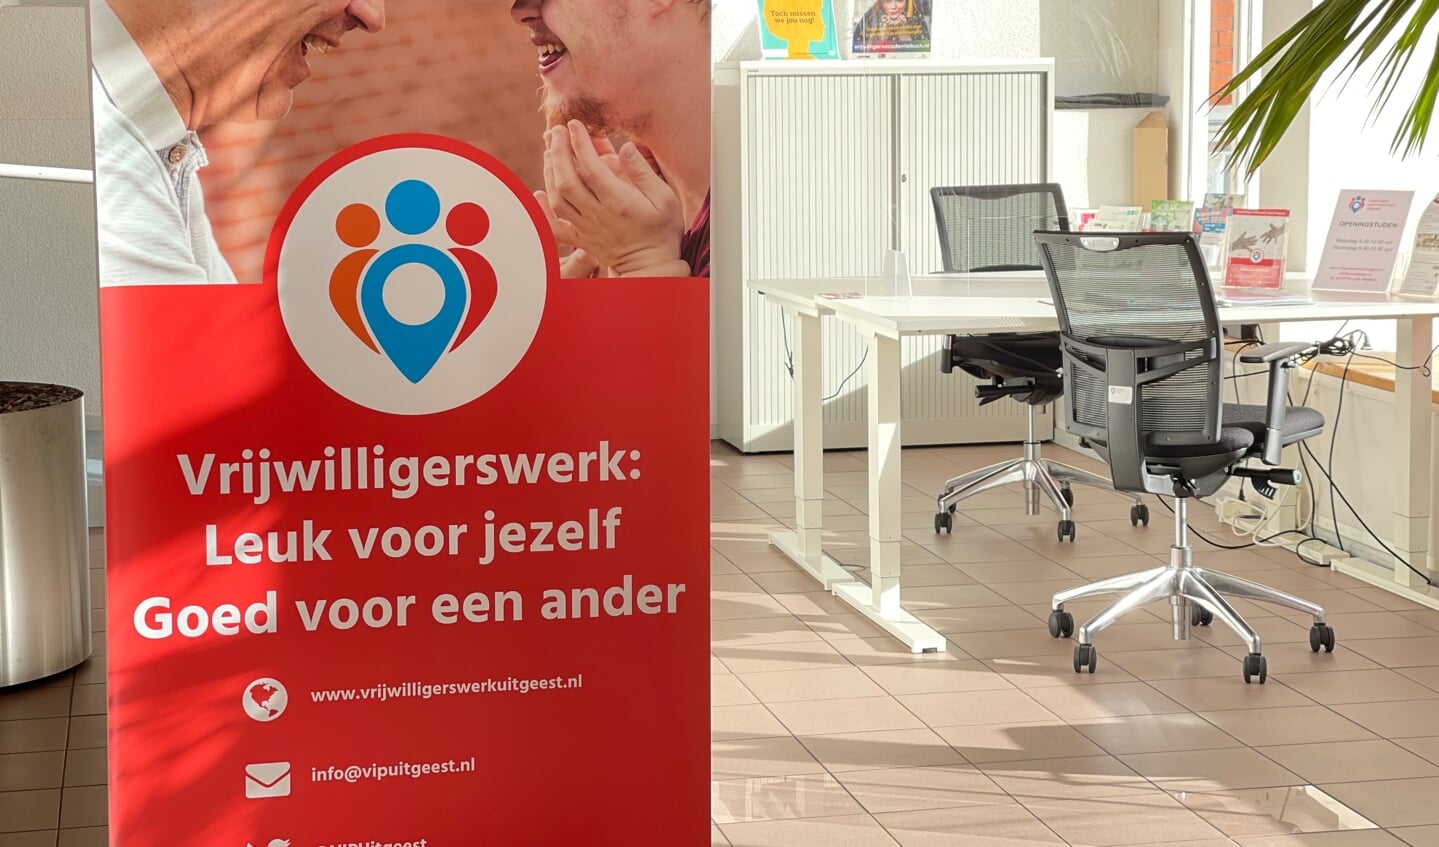 Vrijwilligers Informatiepunt, gevestigd in het gemeentehuis van Uitgeest.